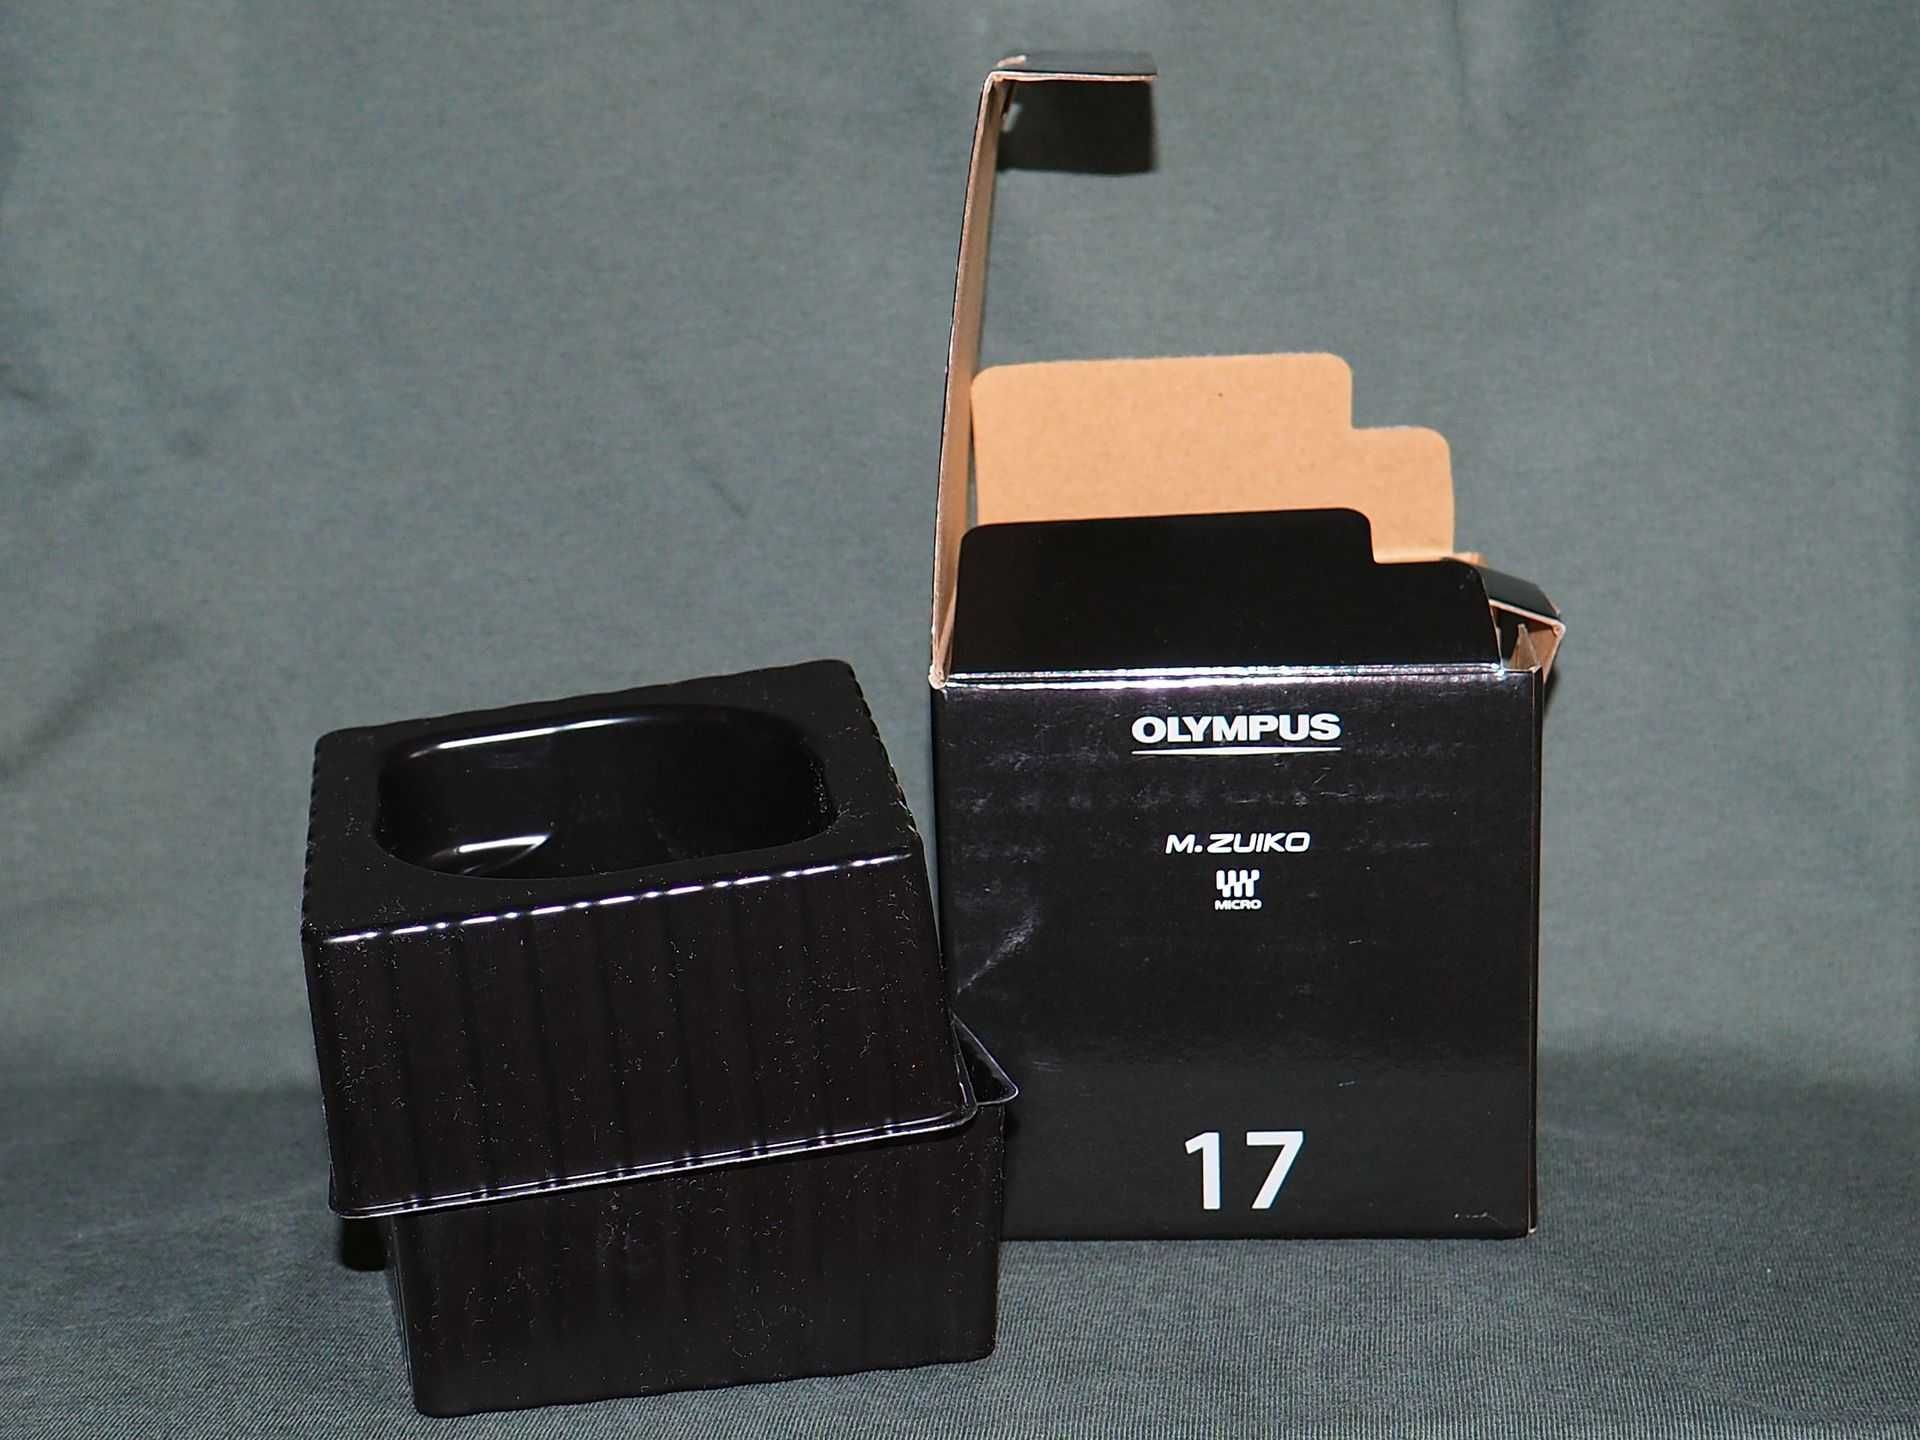 Pudełko, opakowanie na obiektyw Olympus M.Zuiko 17mm f1.8.